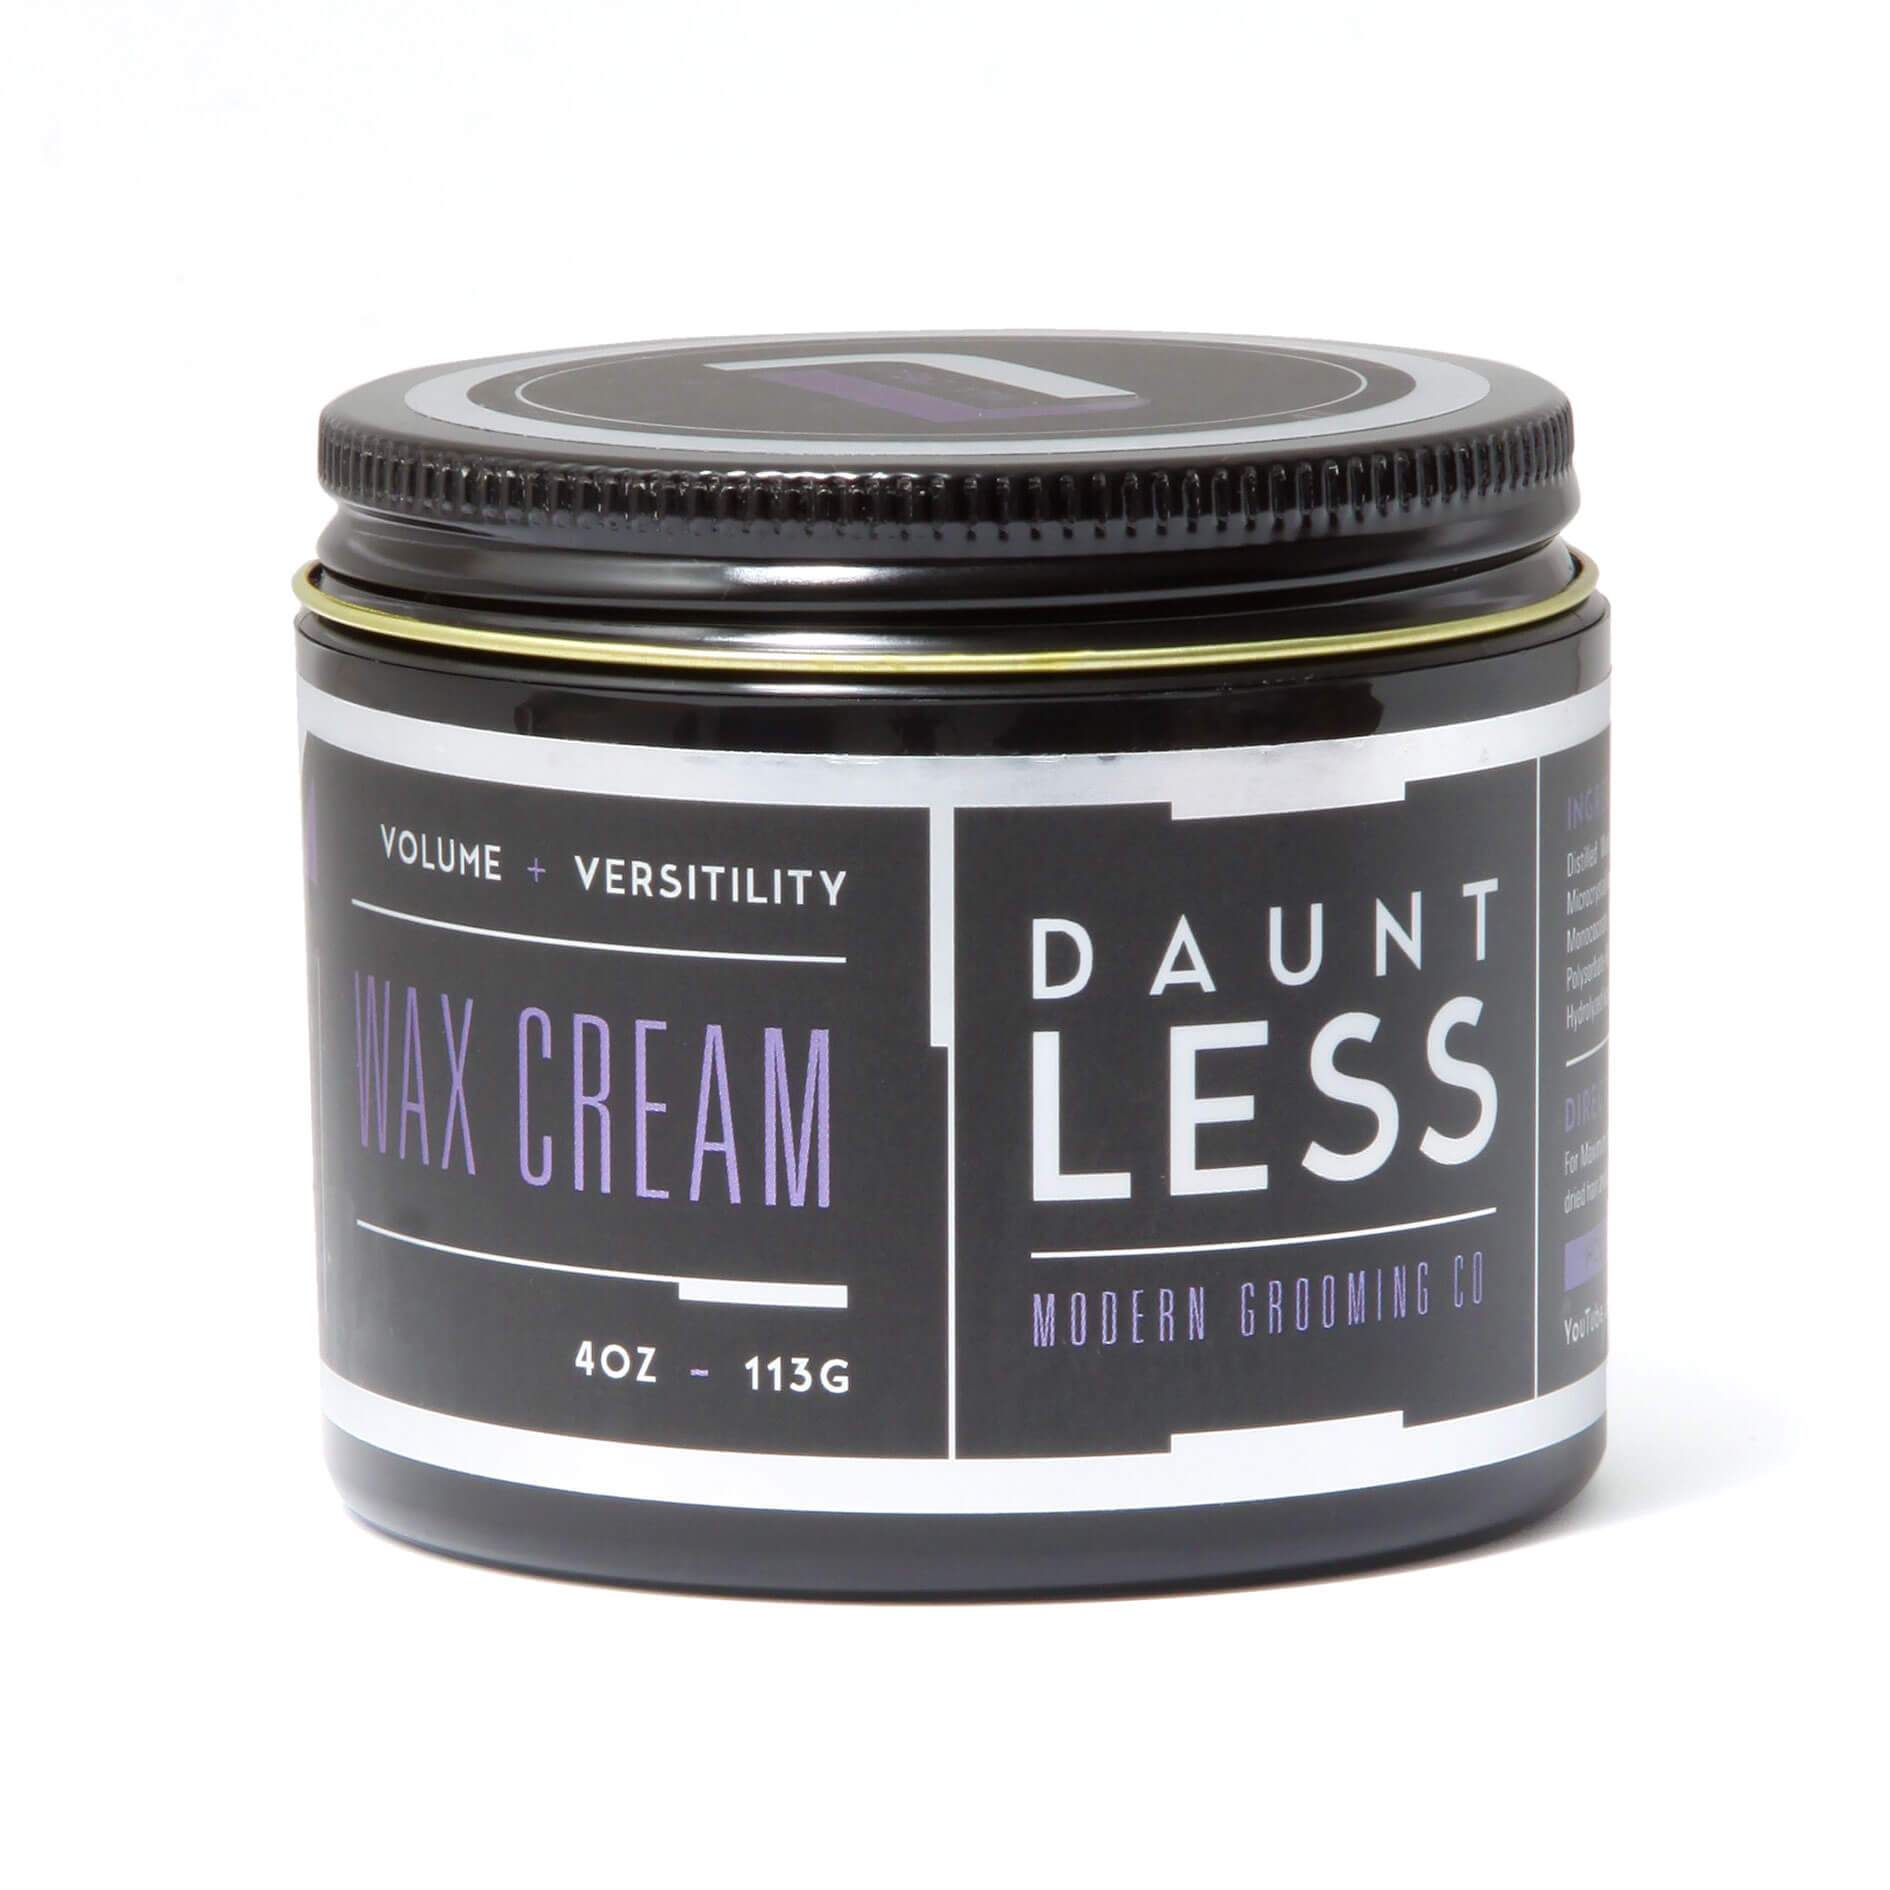 Dauntless Wax Cream